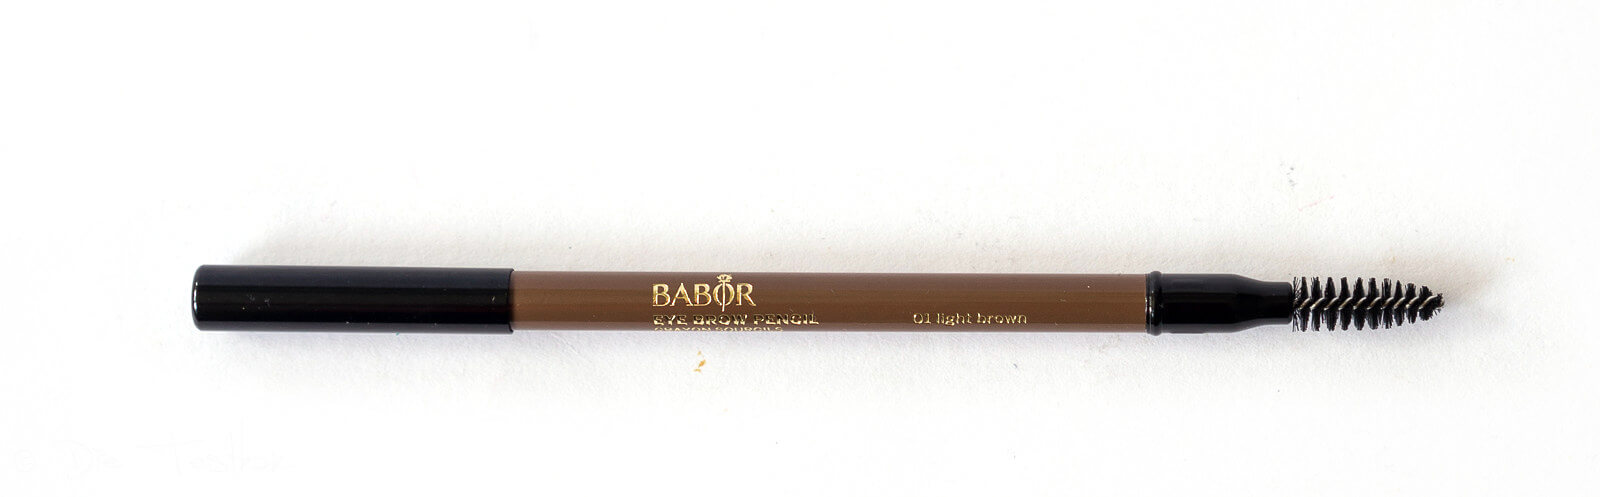 Hochwertige dekorative Kosmetik von Babor für ein schönes, haltbares Sommer Make-up 19